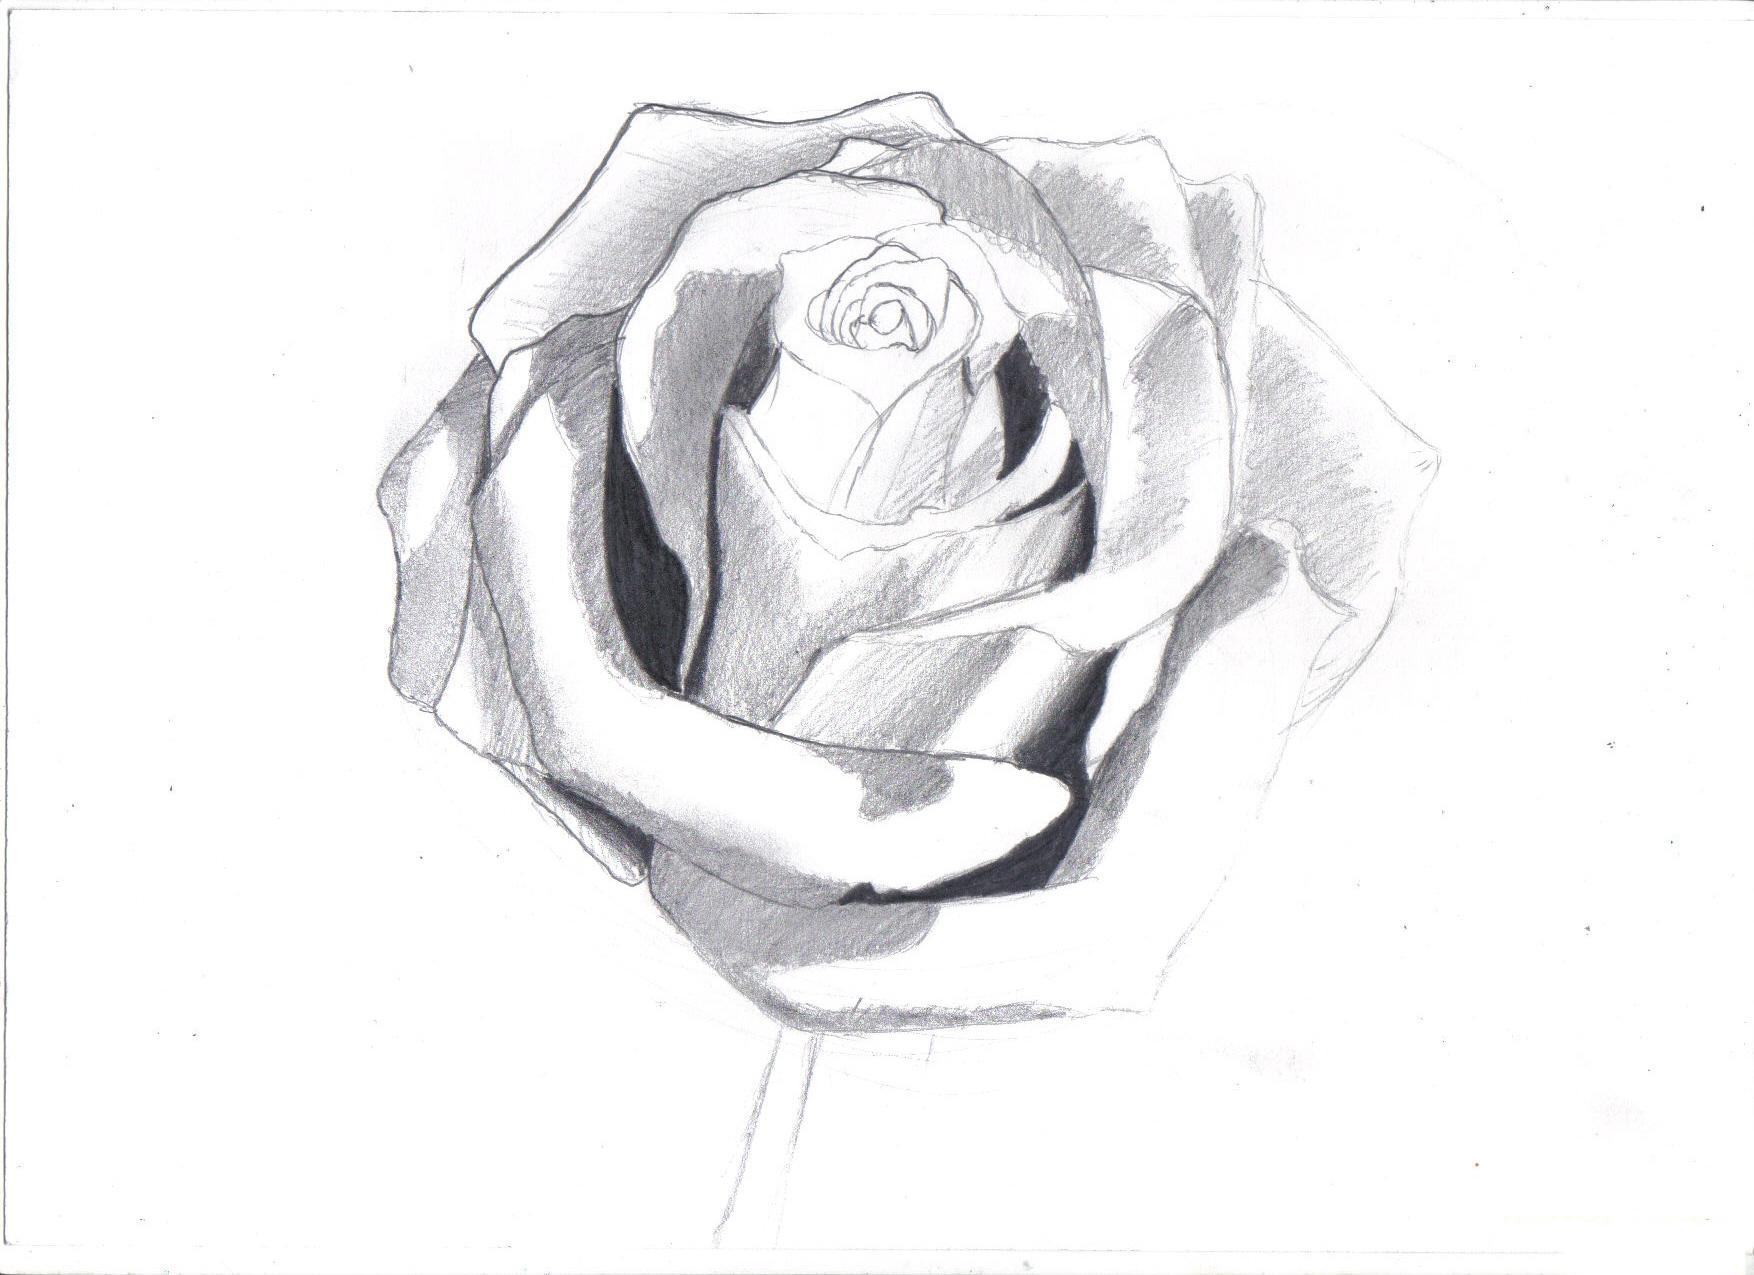 Vẽ hoa hồng bằng bút chì đẹp